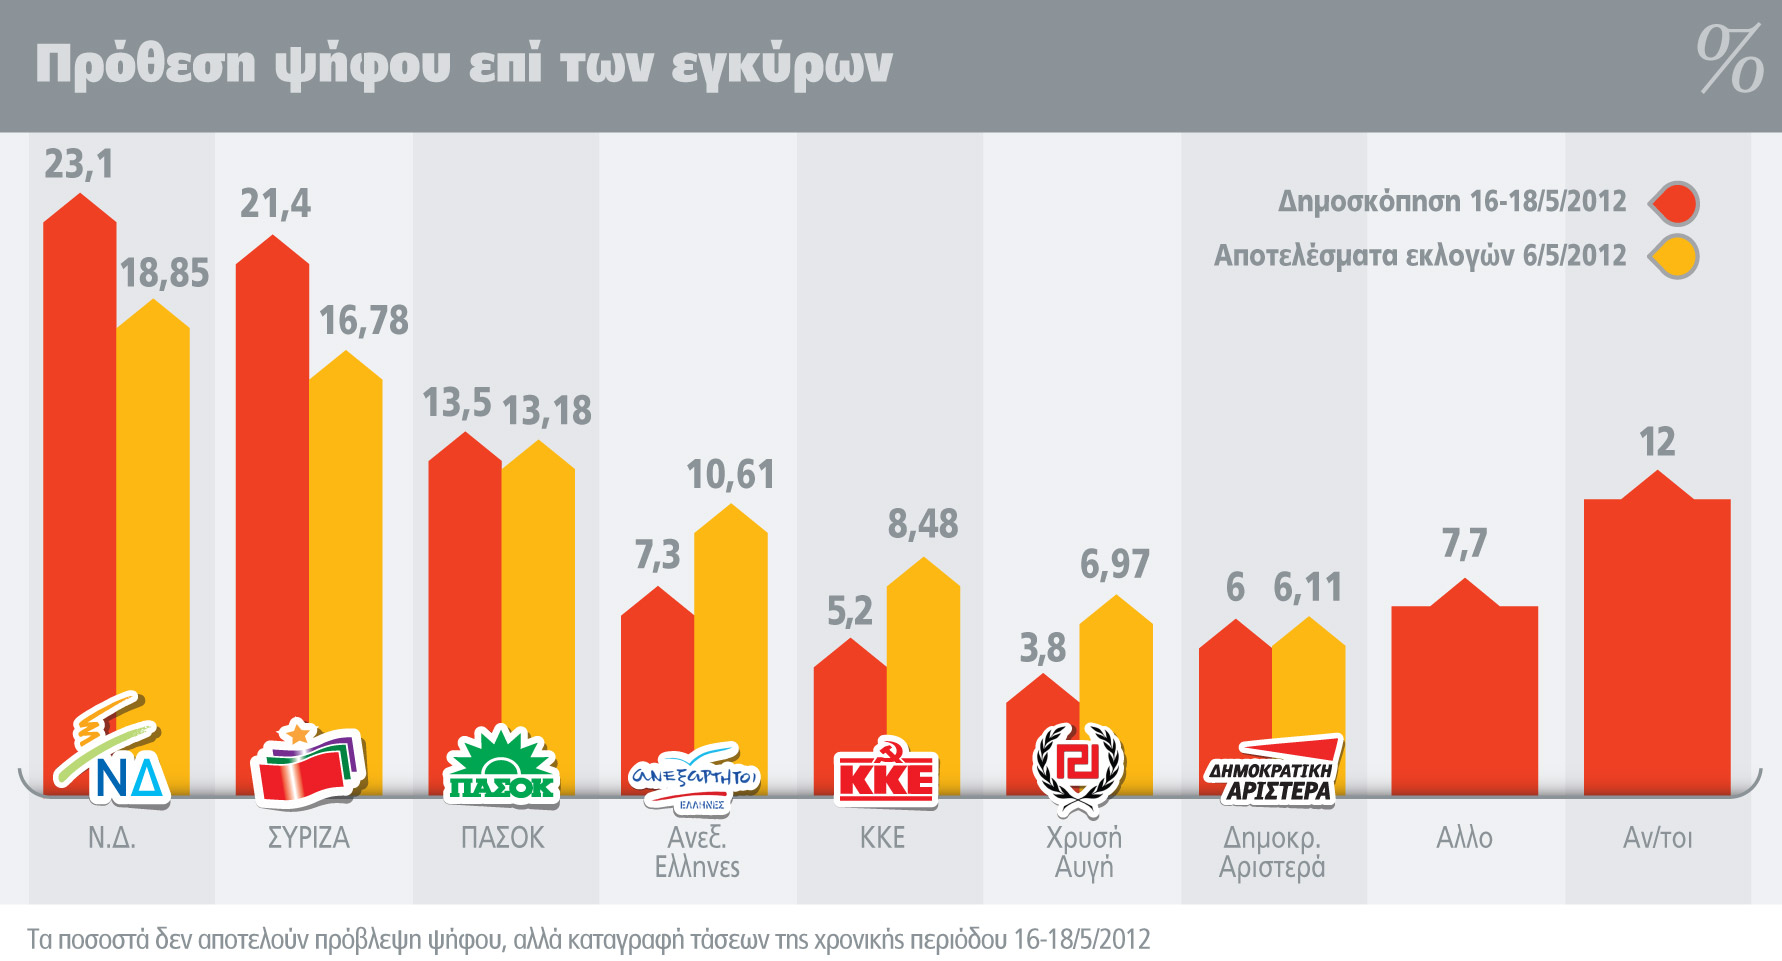 Κι άλλη δημοσκόπηση - ALCO: Πρώτη η ΝΔ με 23,1%, ΣΥΡΙΖΑ 21,4%, τρίτο το ΠΑΣΟΚ με 13,5% - Φωτογραφία 2